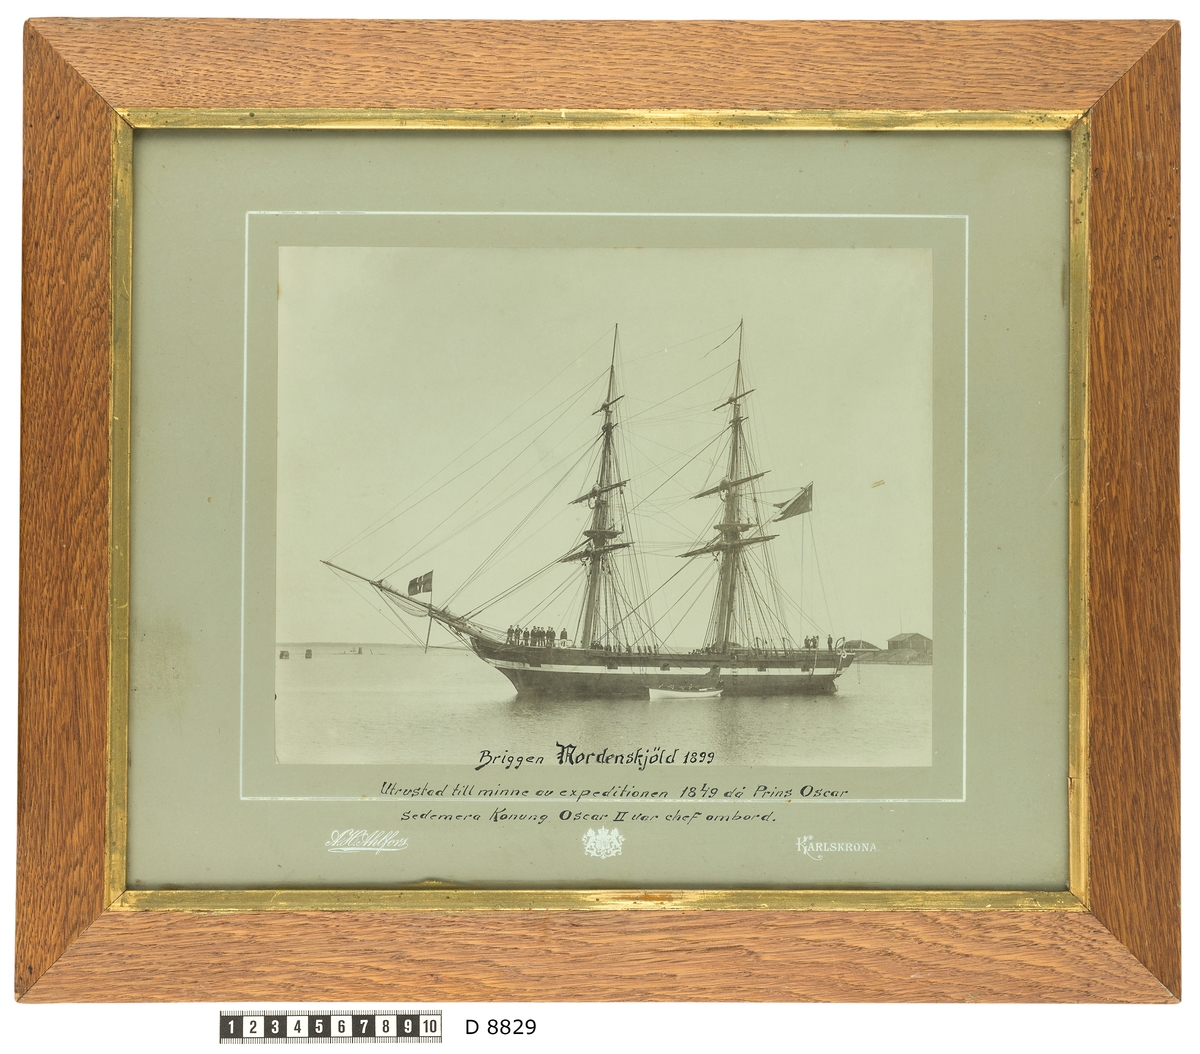 Bilden visar briggen Nordenskjöld från babordssidan till ankars i Karlskrona. Briggen är utrustad till minne av expeditionen 1849 då Prins Oscar senare Konung Oscr II var chef ombord.